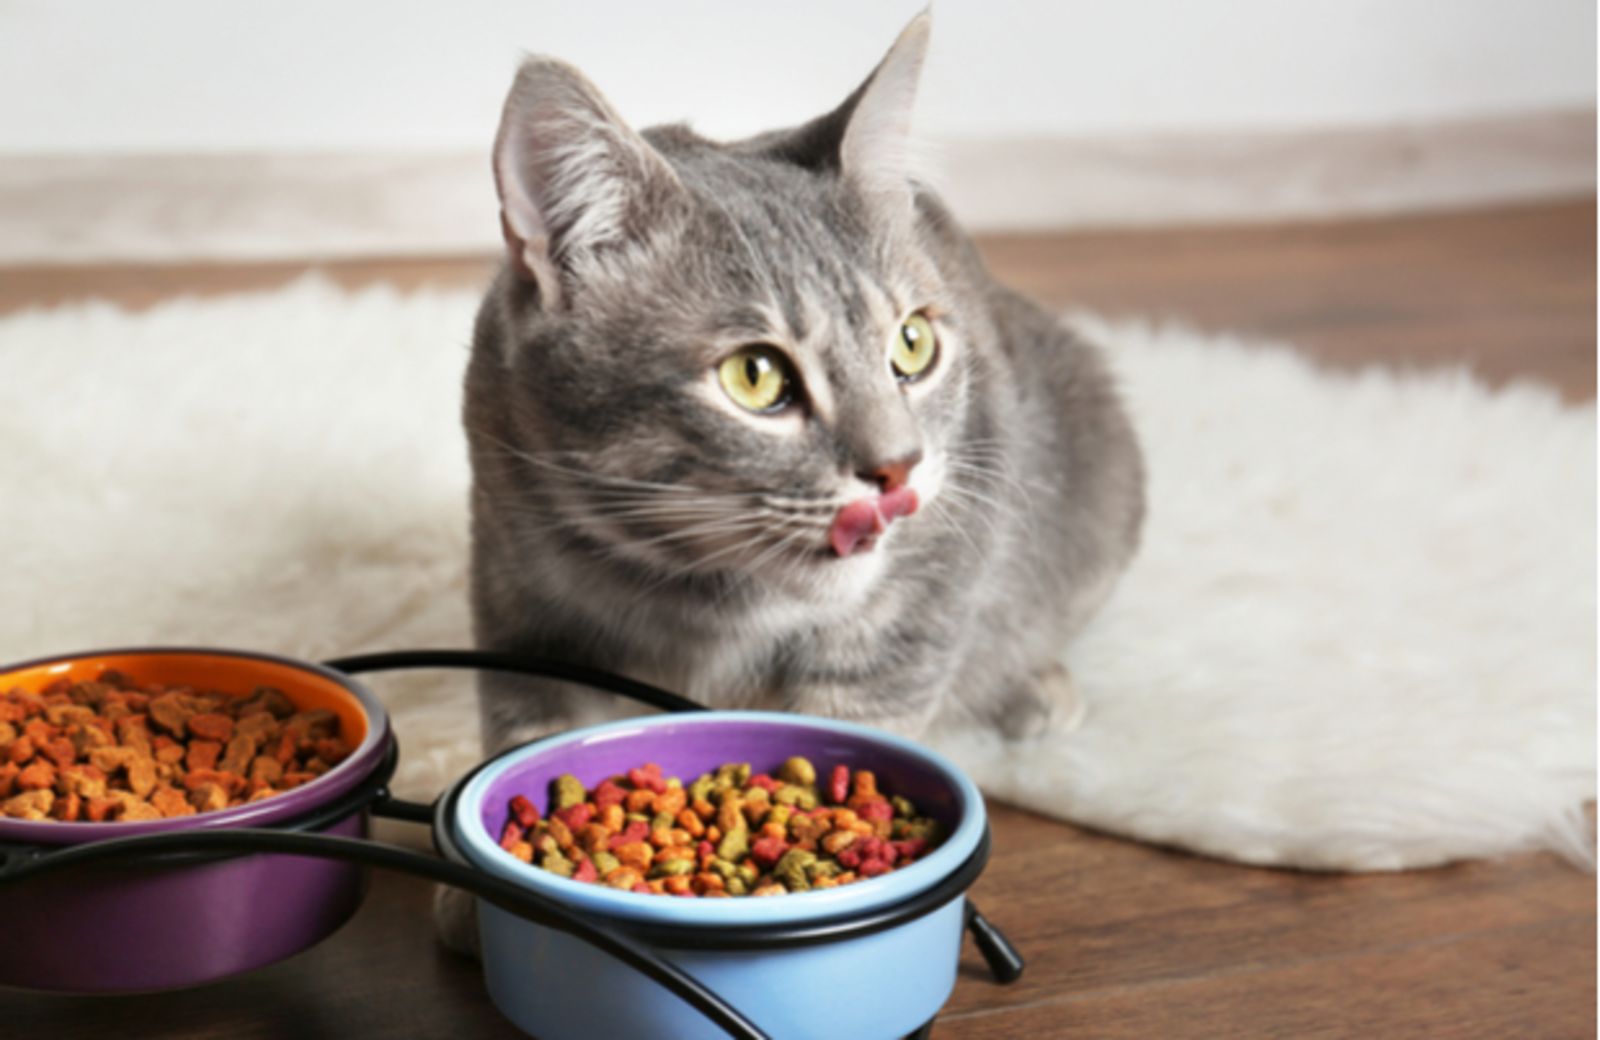 Thức ăn hạt hiện nay rất tiện dụng cho người nuôi mèo, tuy nhiên không tránh khỏi trường hợp ăn hạt bị đi ngoài